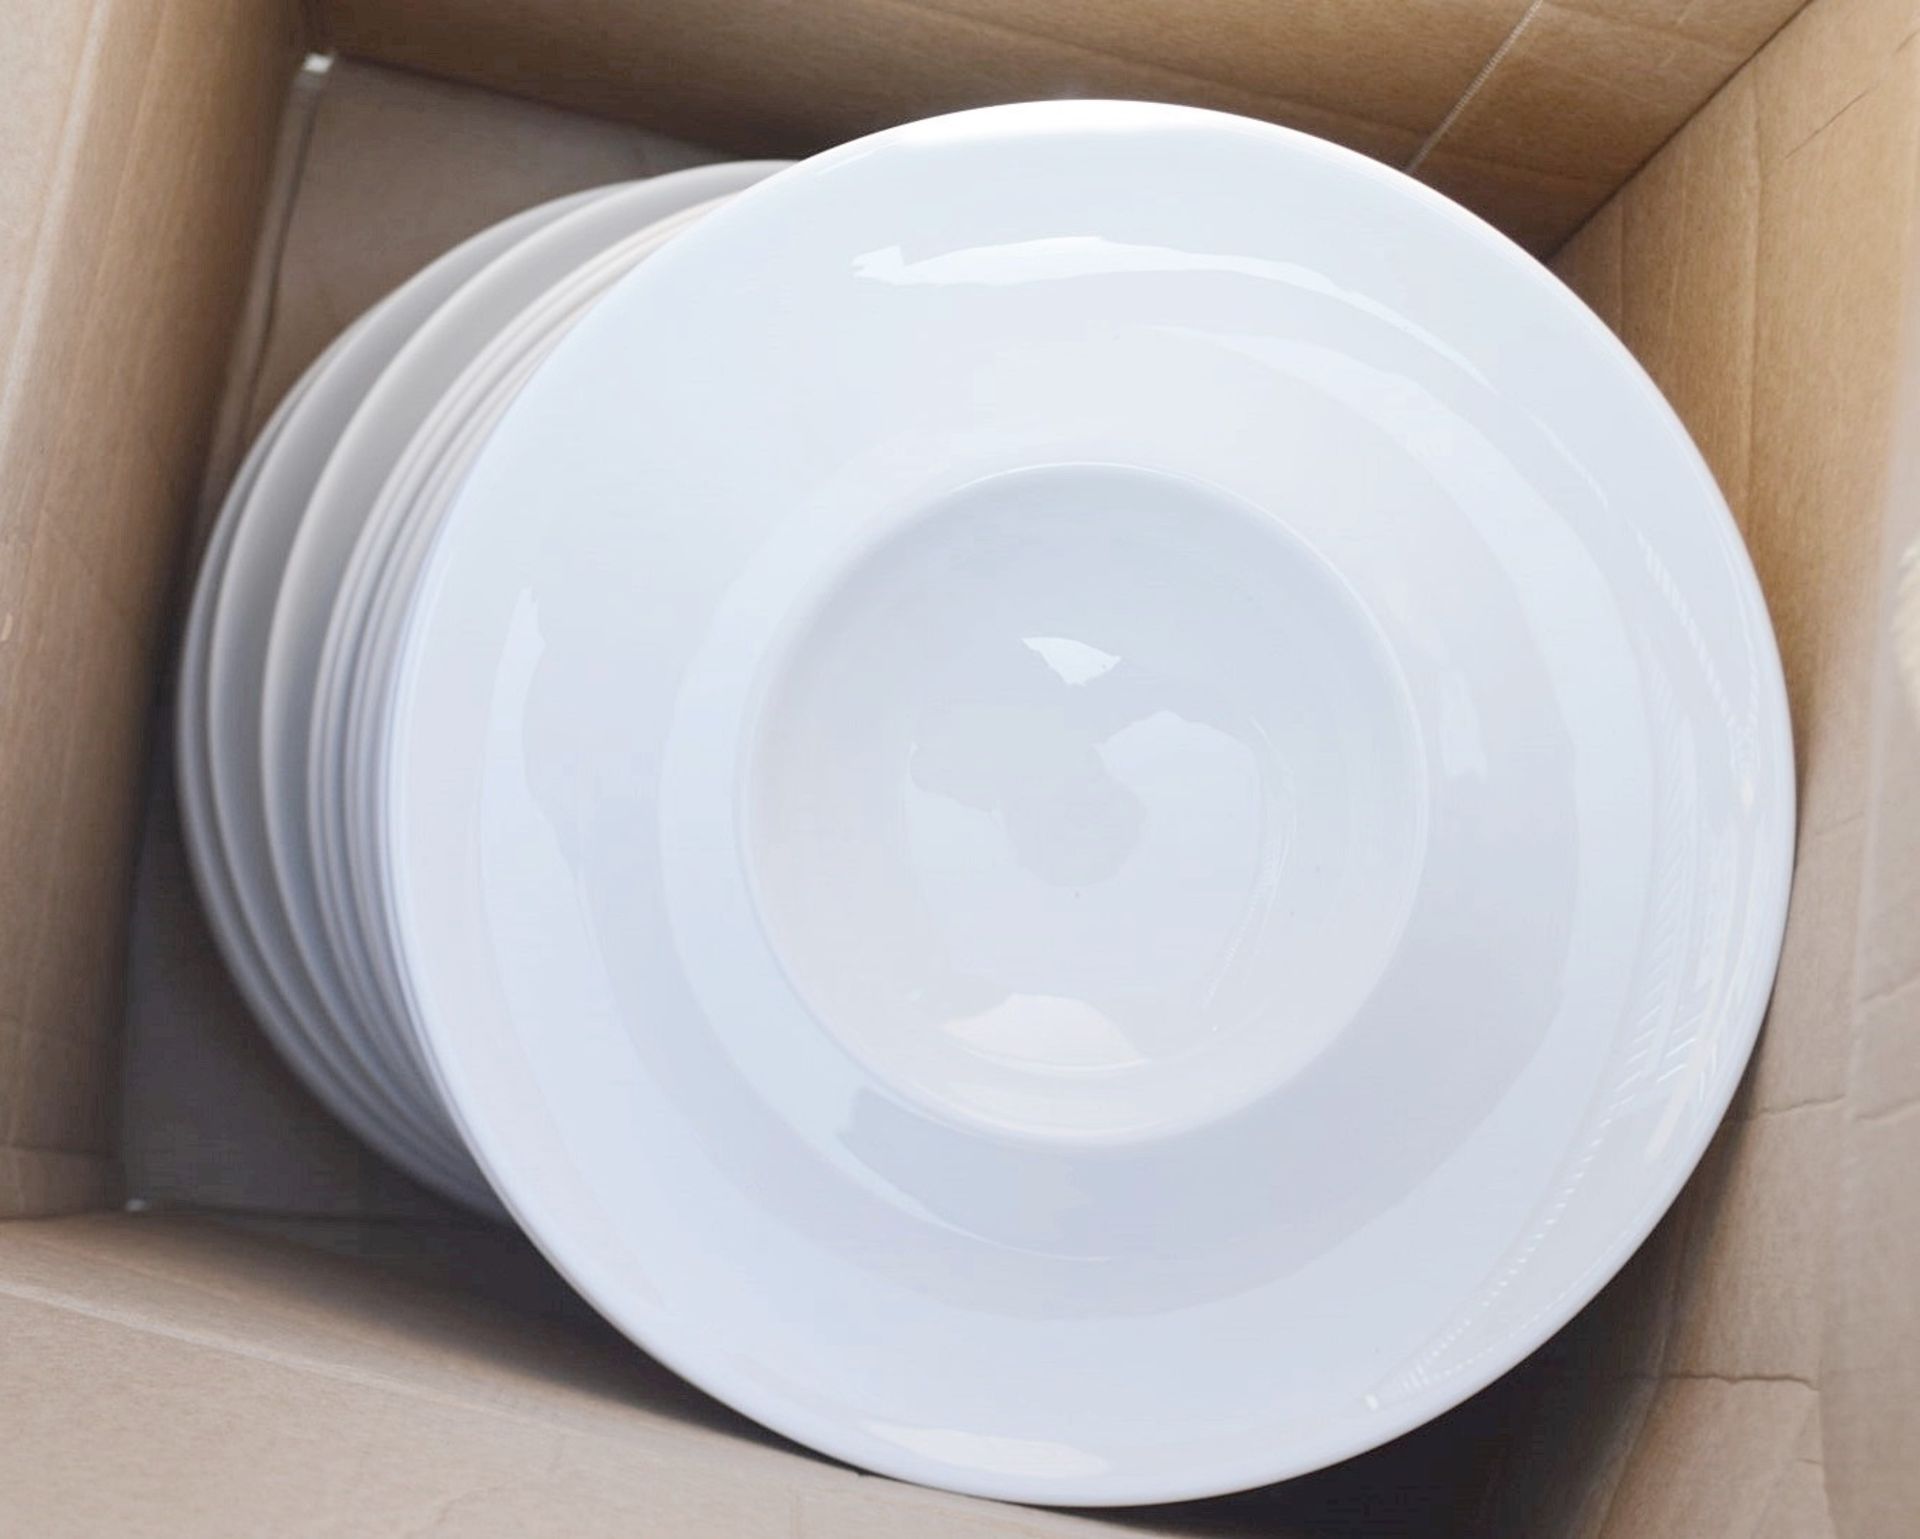 20 x PILLIVUYT Commercial Wide Rim Porcelain Soup / Pasta Bowls In White - Dimensions: 26cm Diameter - Image 3 of 5